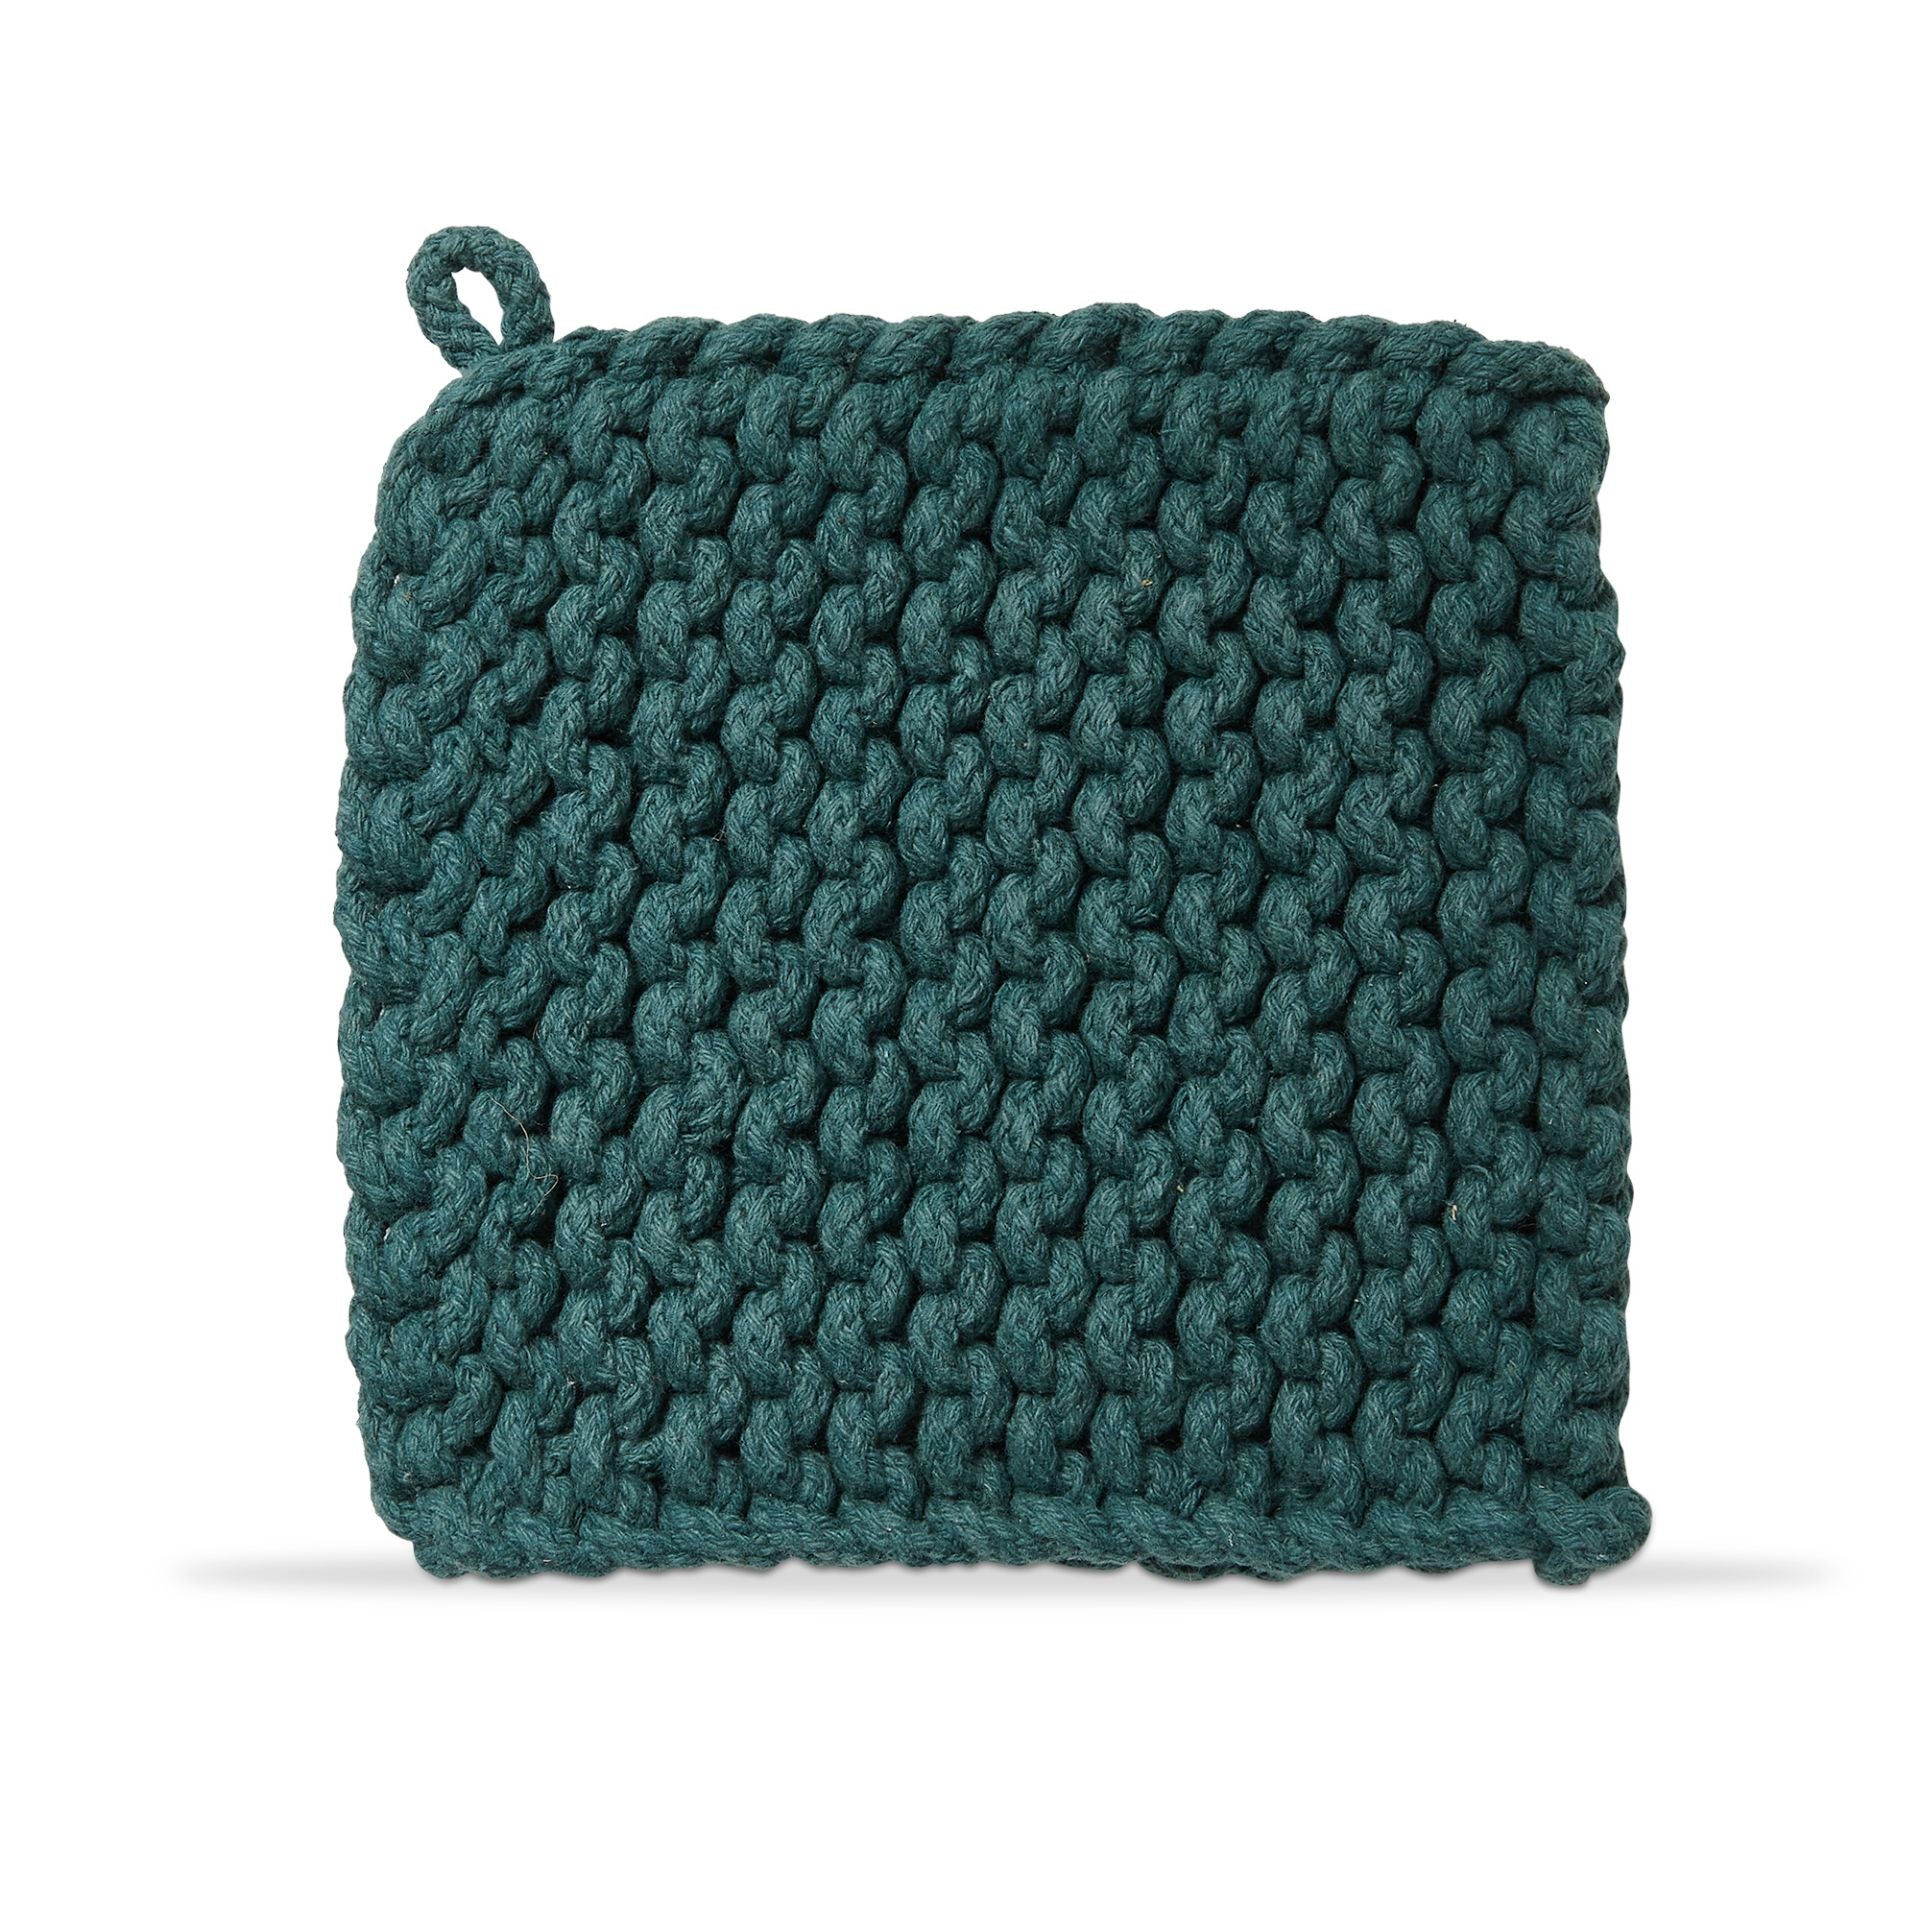 crochet trivet potholder dark green